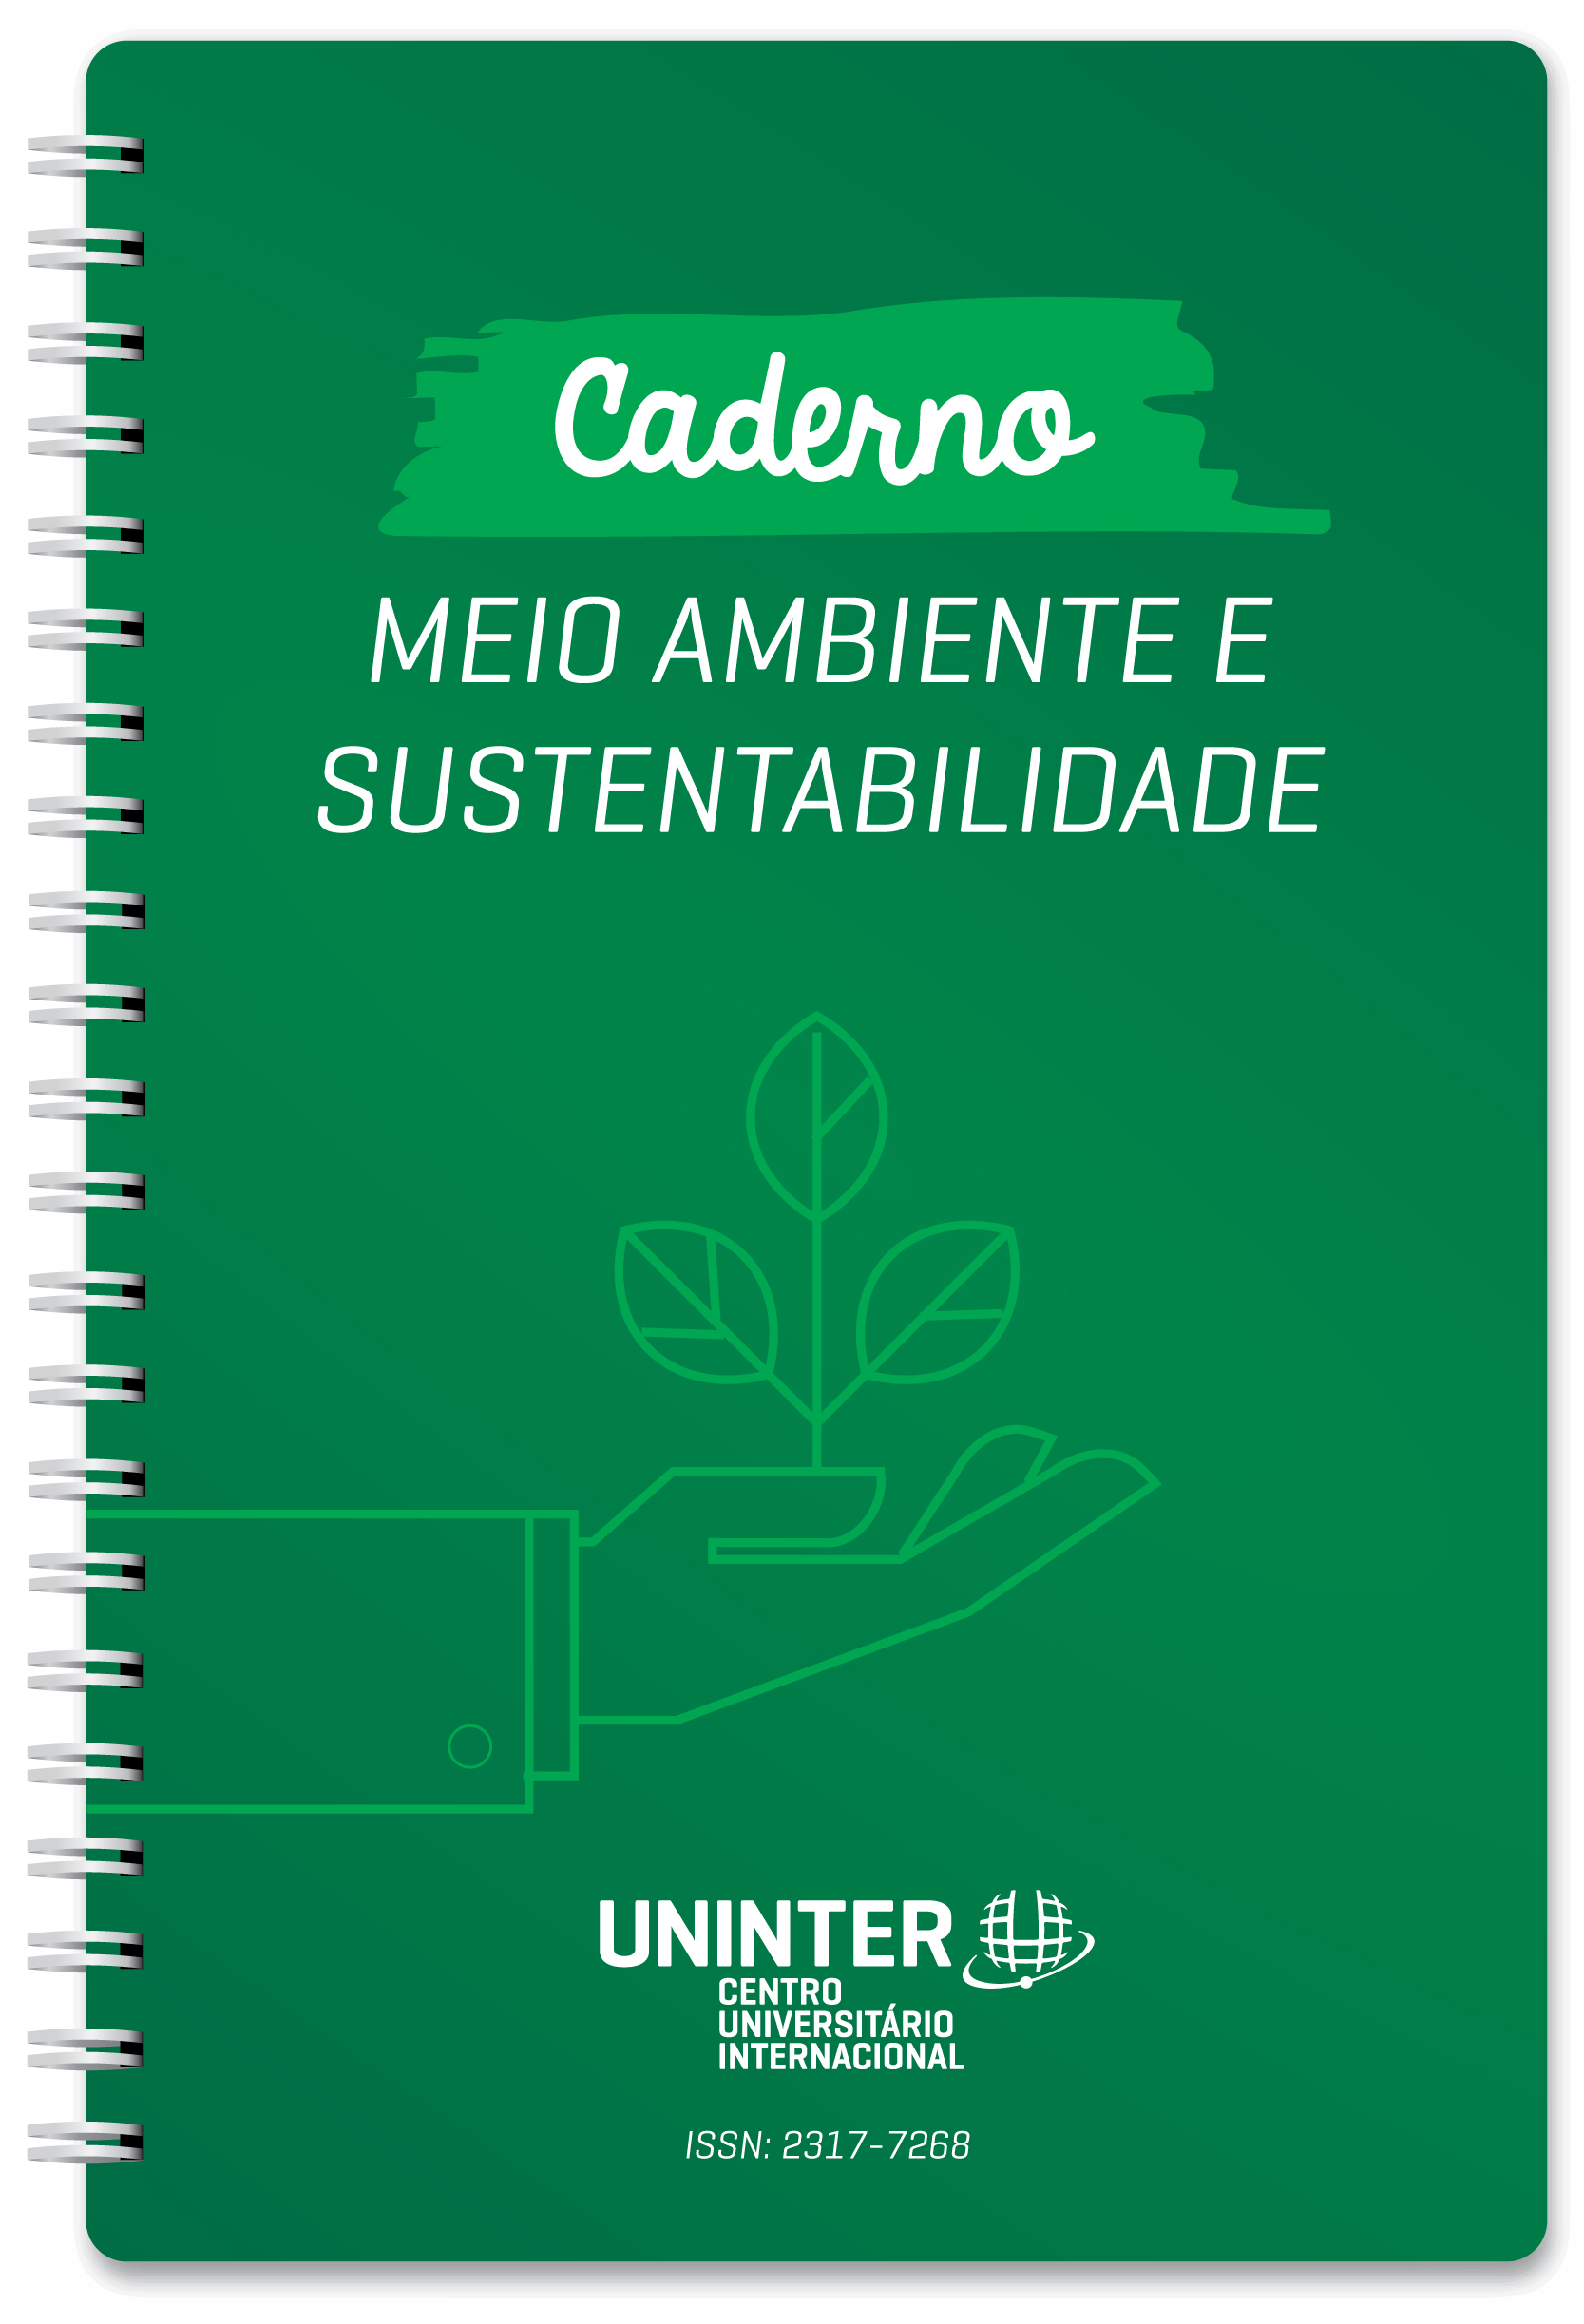 Caderno Meio Ambiente e Sustentabilidade